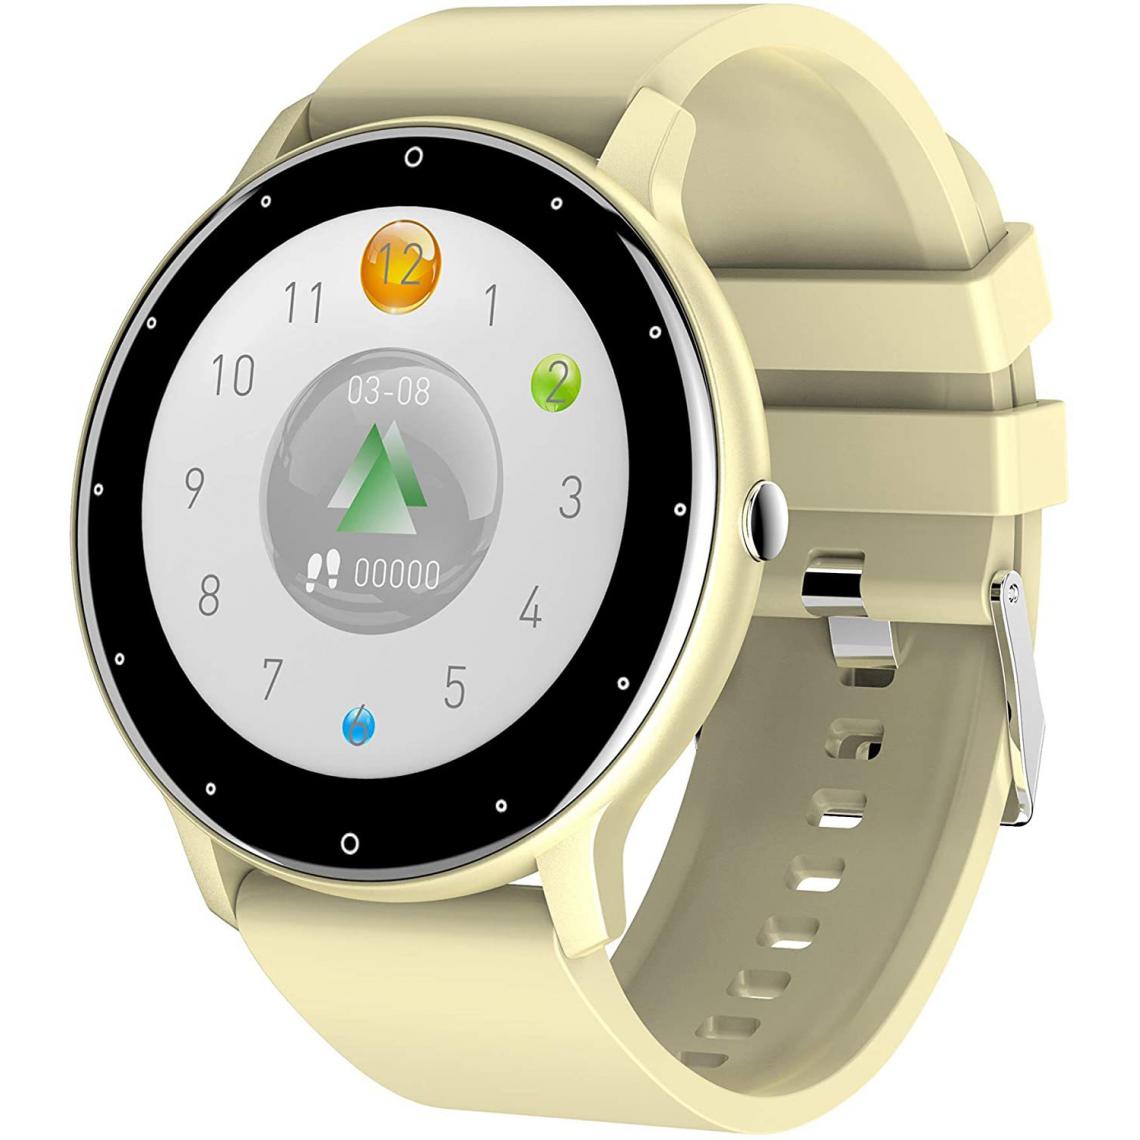 Chrono - Montre intelligente pour téléphones Android iOS Phone Ultra Thin Smartwatch Moniteur de fréquence cardiaque Fitness Tracker avec podomètre de pression artérielle Compteur de calories Montre pour femmes Hommesï¼Beigeï¼ - Montre connectée